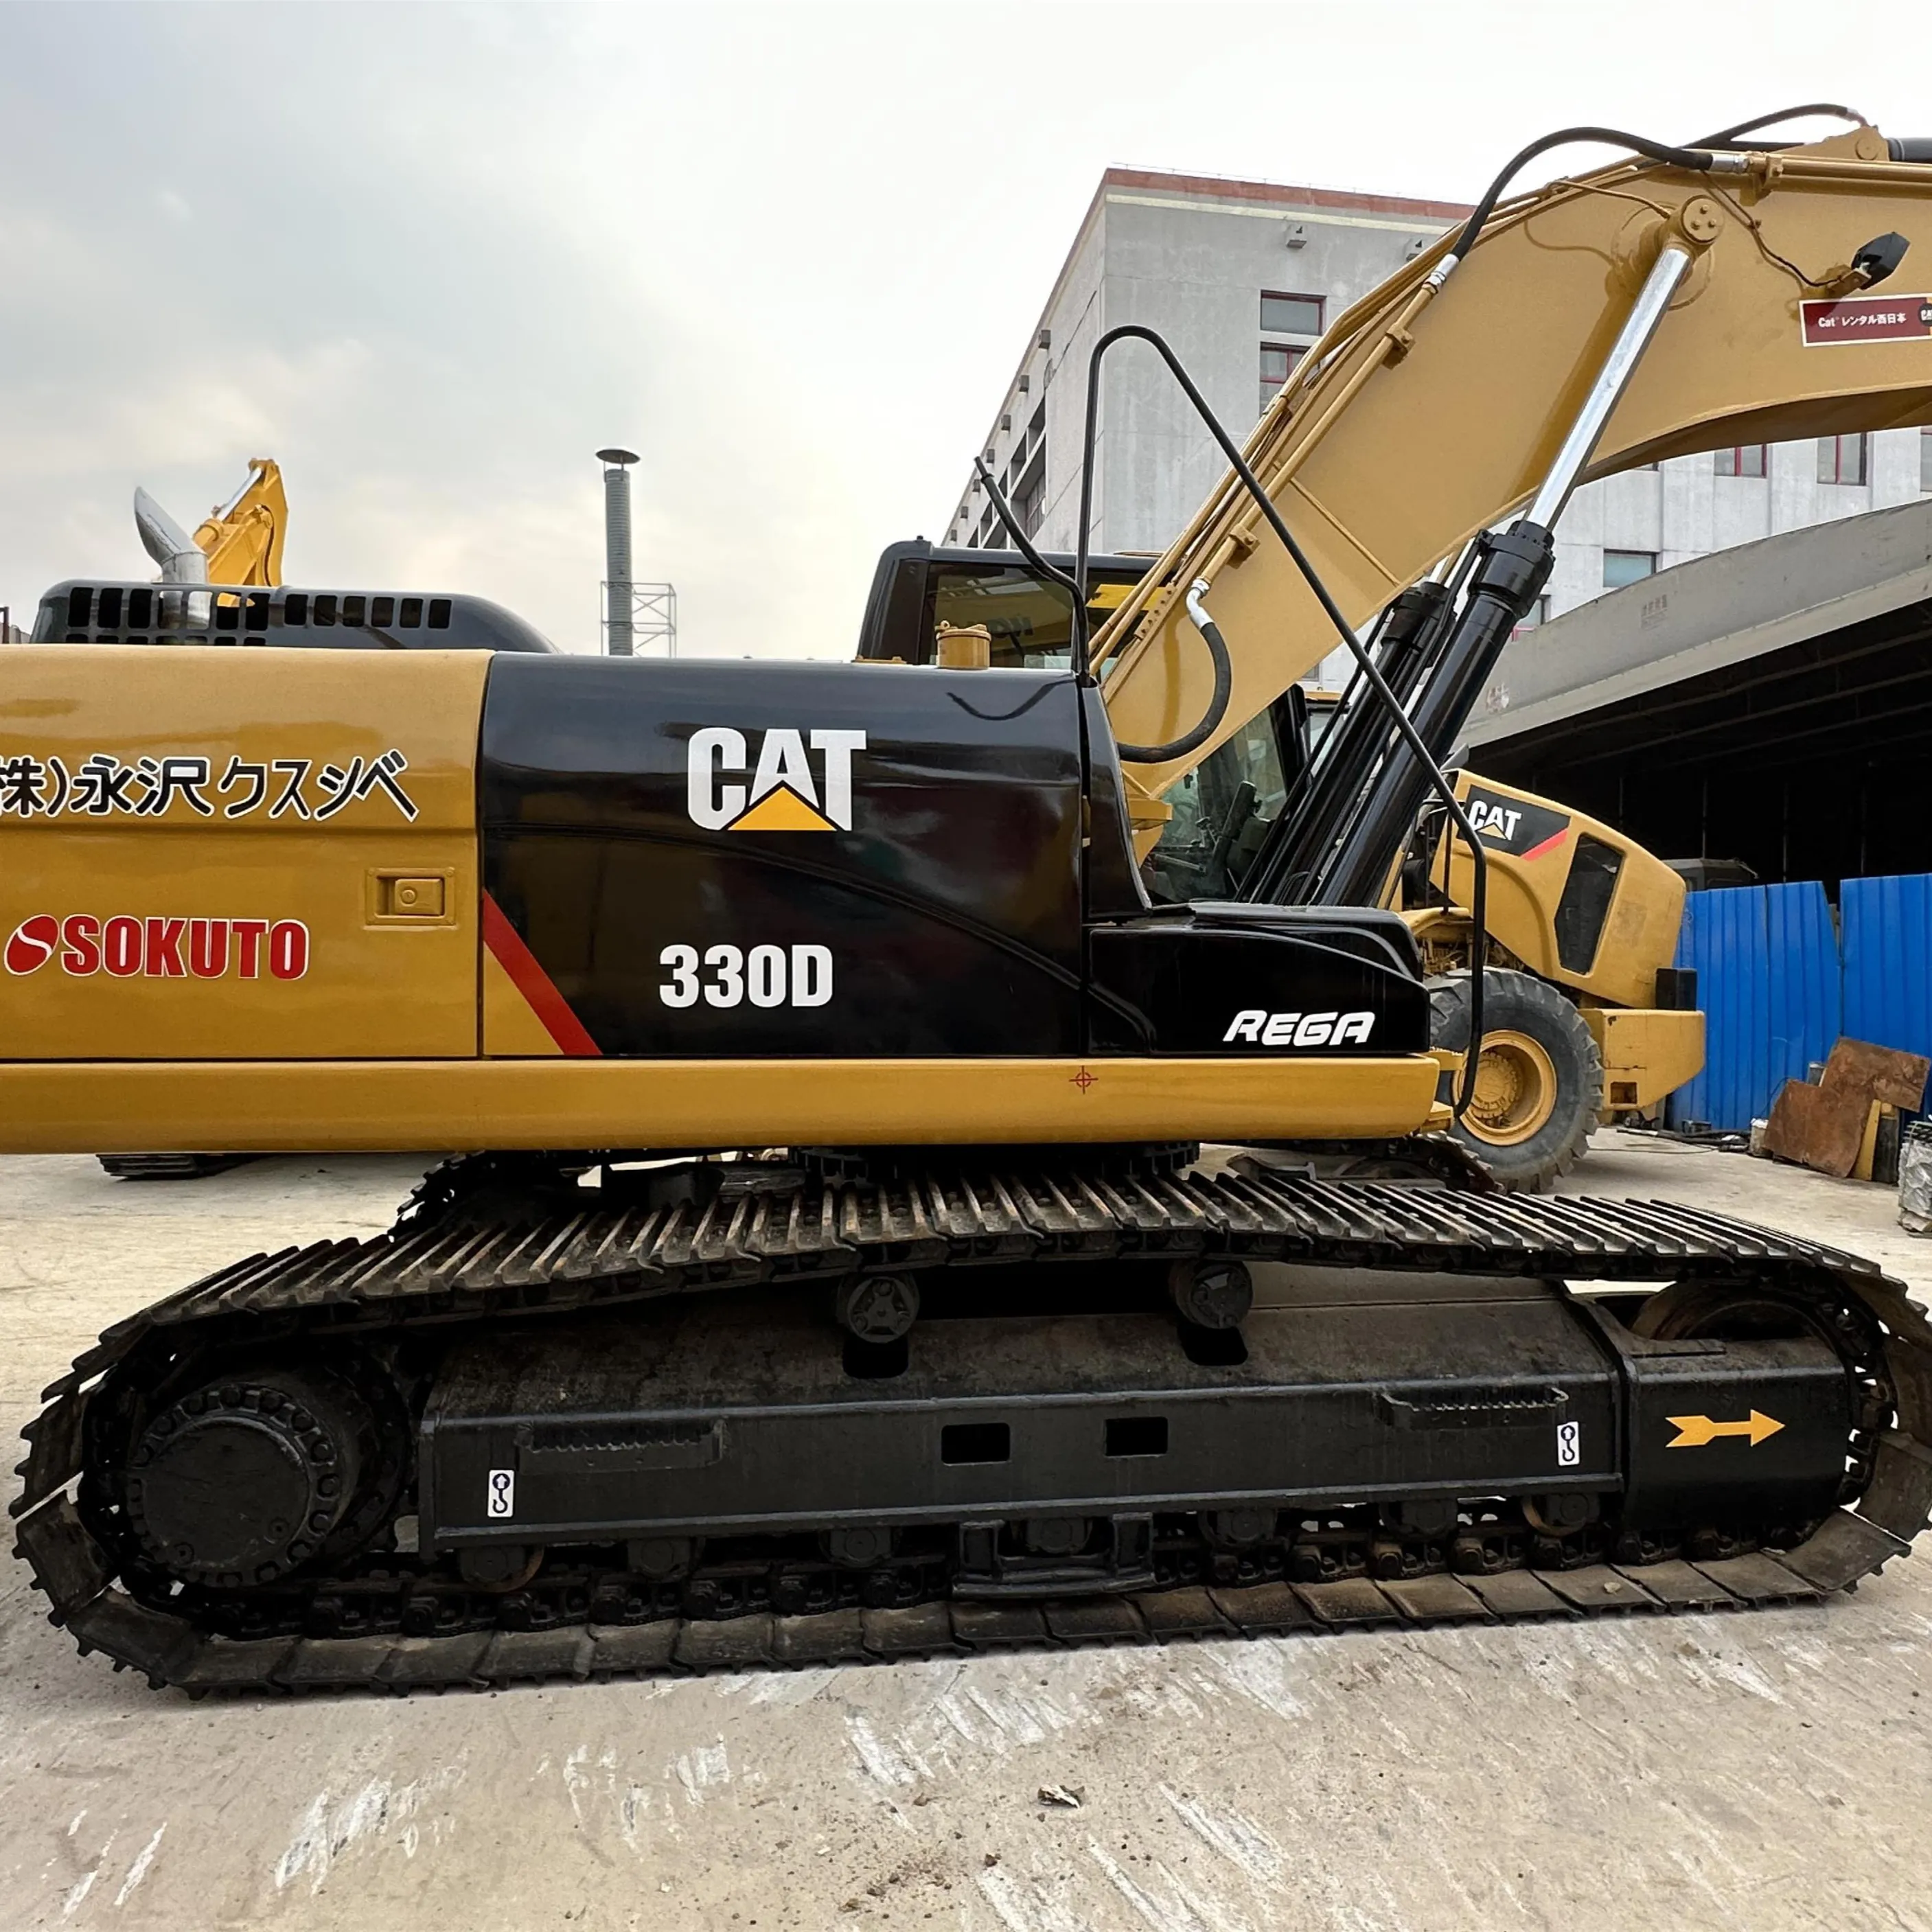 Excavadora Cat 330D Caterpillar 330 excavadoras equipo de construcción de movimiento de tierras usadas buenas condiciones de trabajo máquinas cat330d